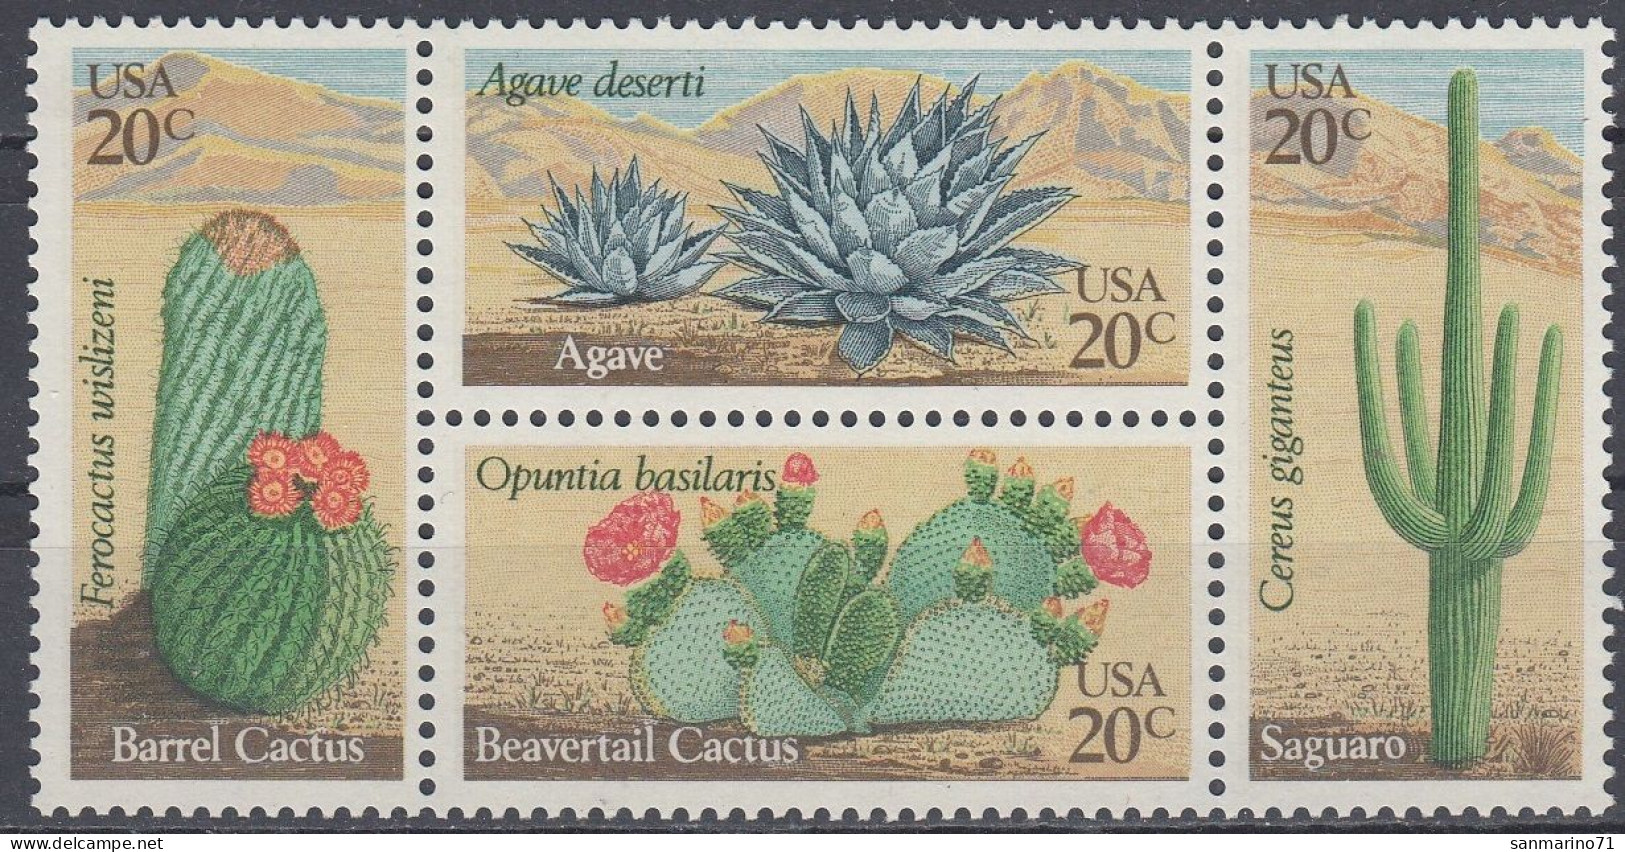 UNITED STATES 1517-1520,unused - Cactus